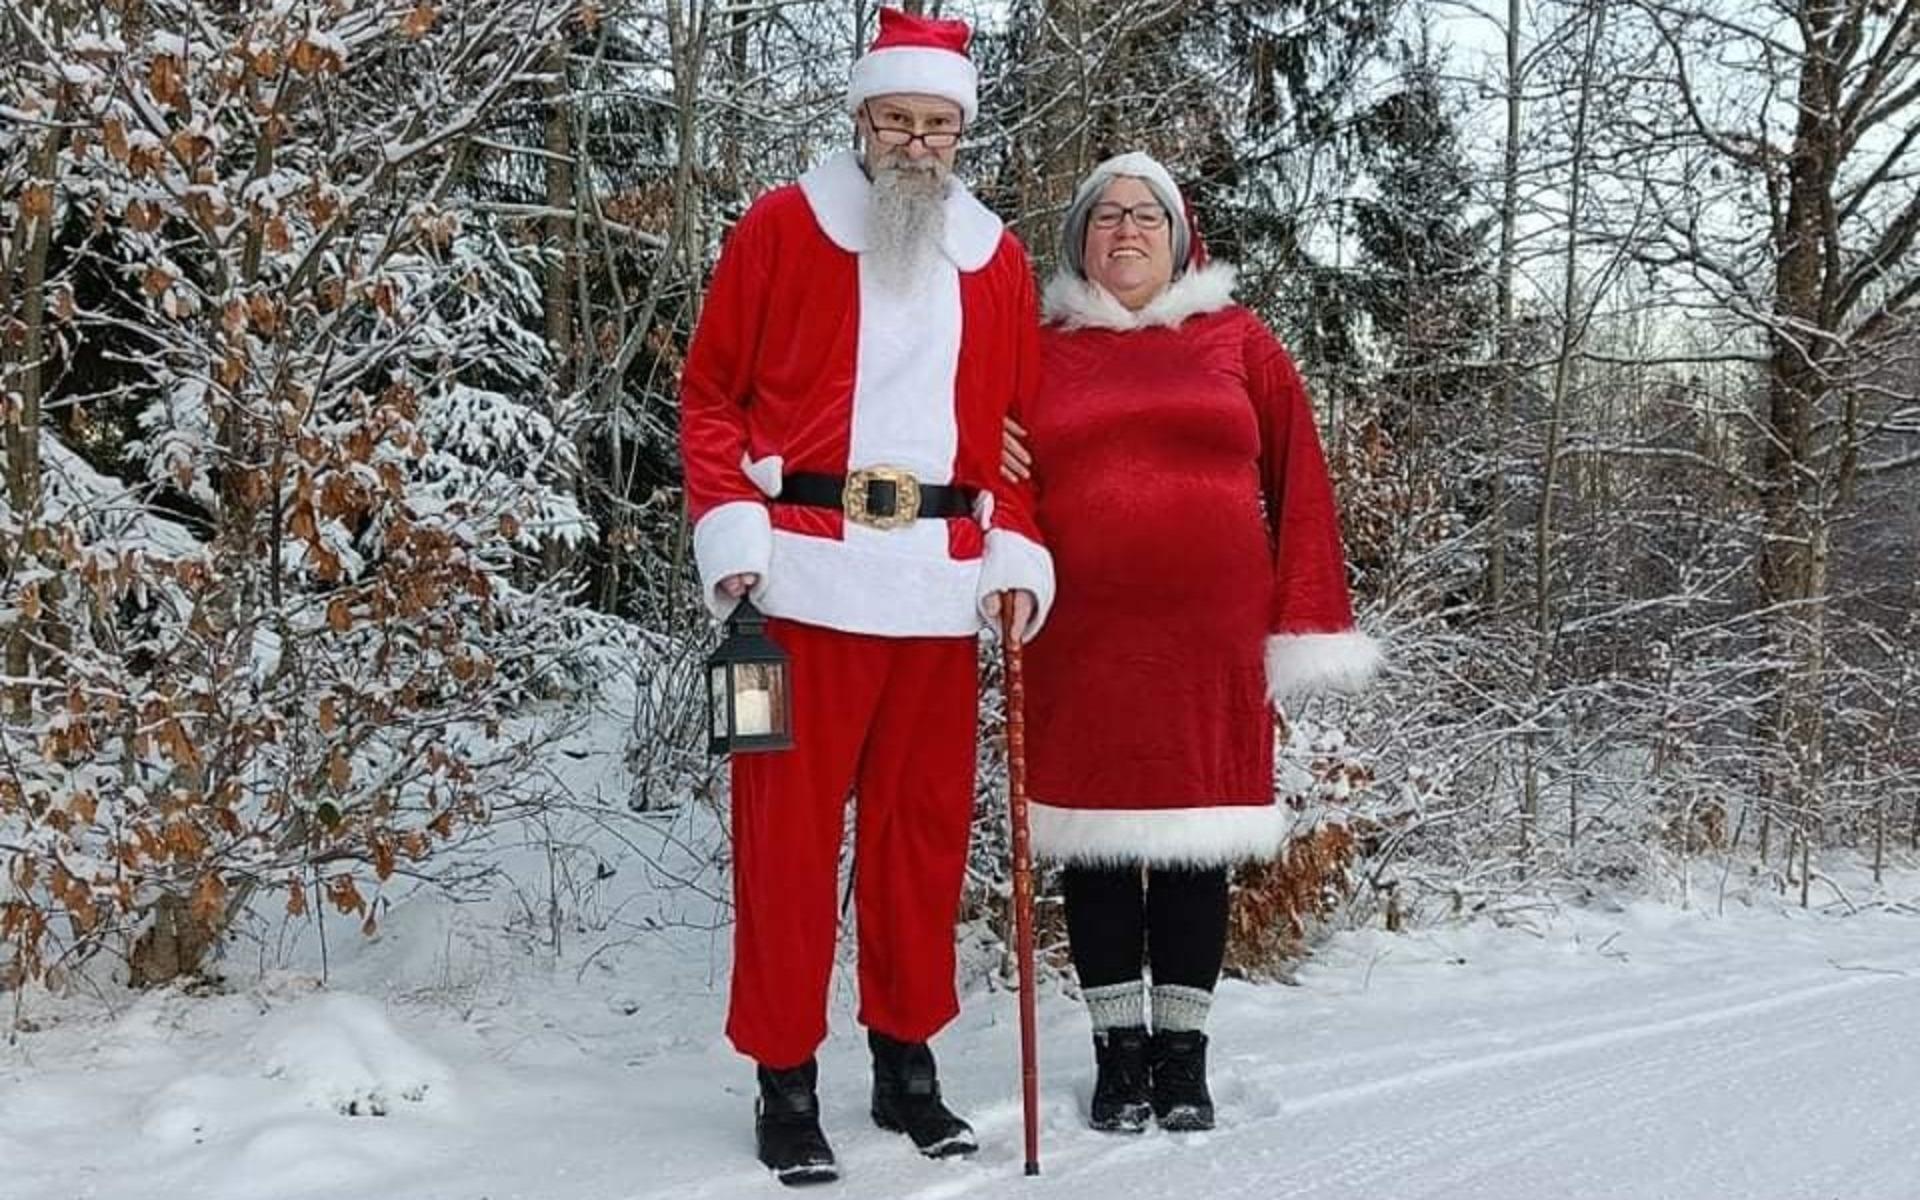 Anette och Claus Dristig Gardan från Stillingsön har tomtat för 30 familjer under julhelgen. Inget ska de ha betalt för tomtandet, utan familjerna de besöker får skänka en valfri slant till organisationen ”Min stora dag”